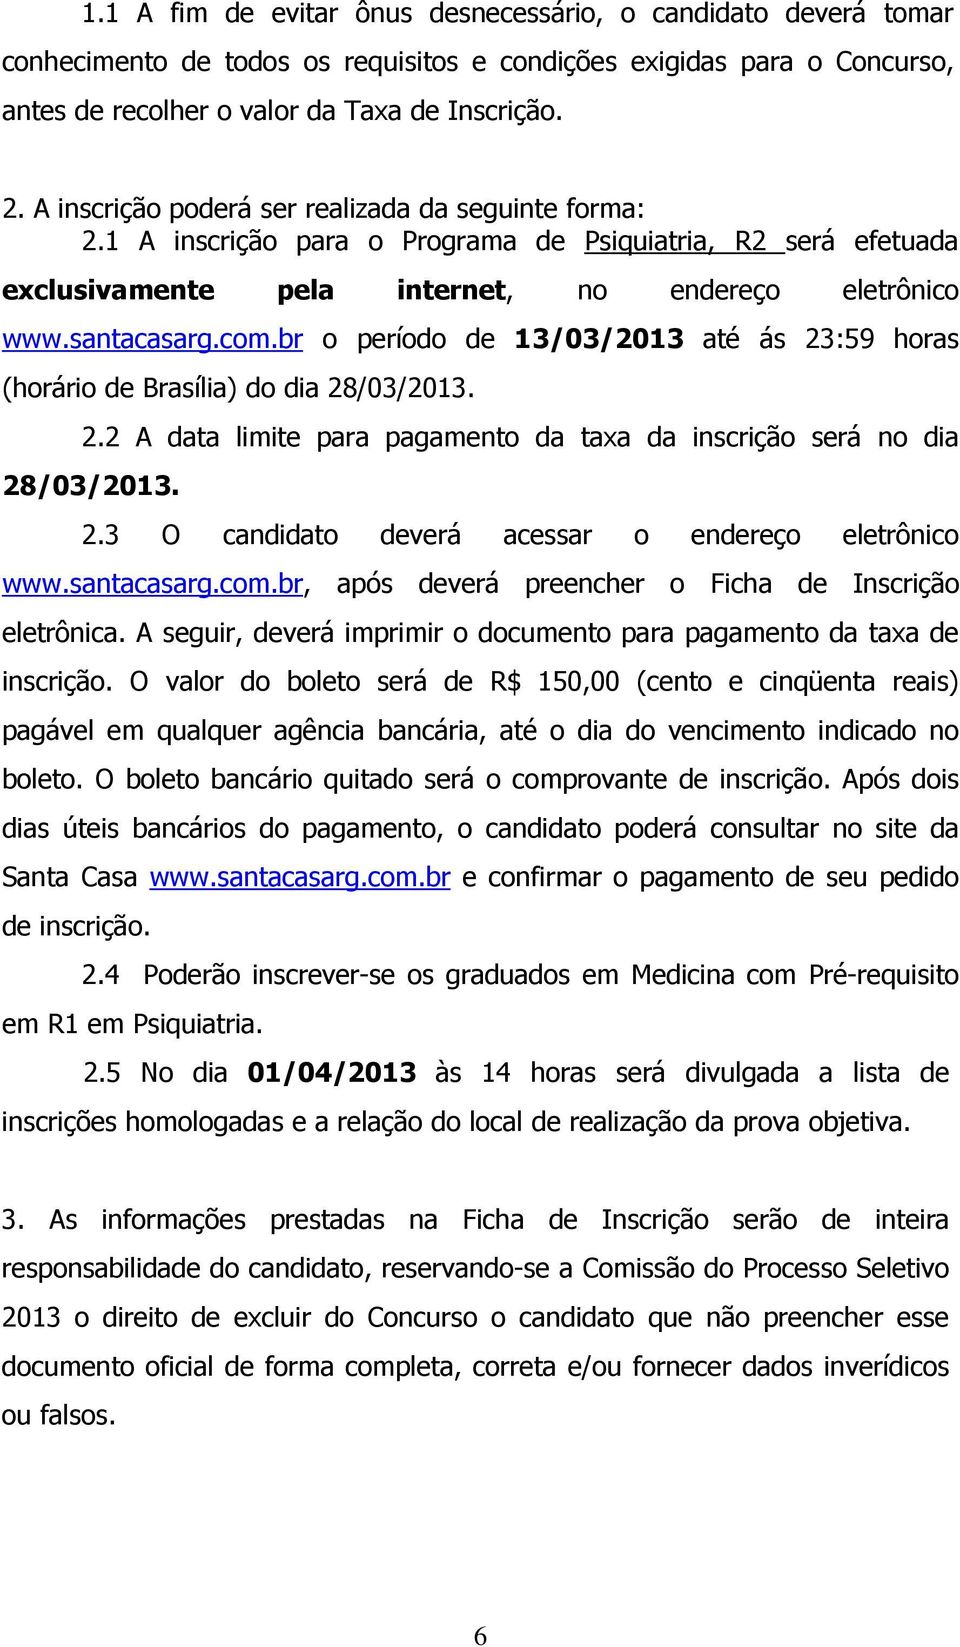 br o período de 13/03/2013 até ás 23:59 horas (horário de Brasília) do dia 28/03/2013. 2.2 A data limite para pagamento da taxa da inscrição será no dia 28/03/2013. 2.3 O candidato deverá acessar o endereço eletrônico www.